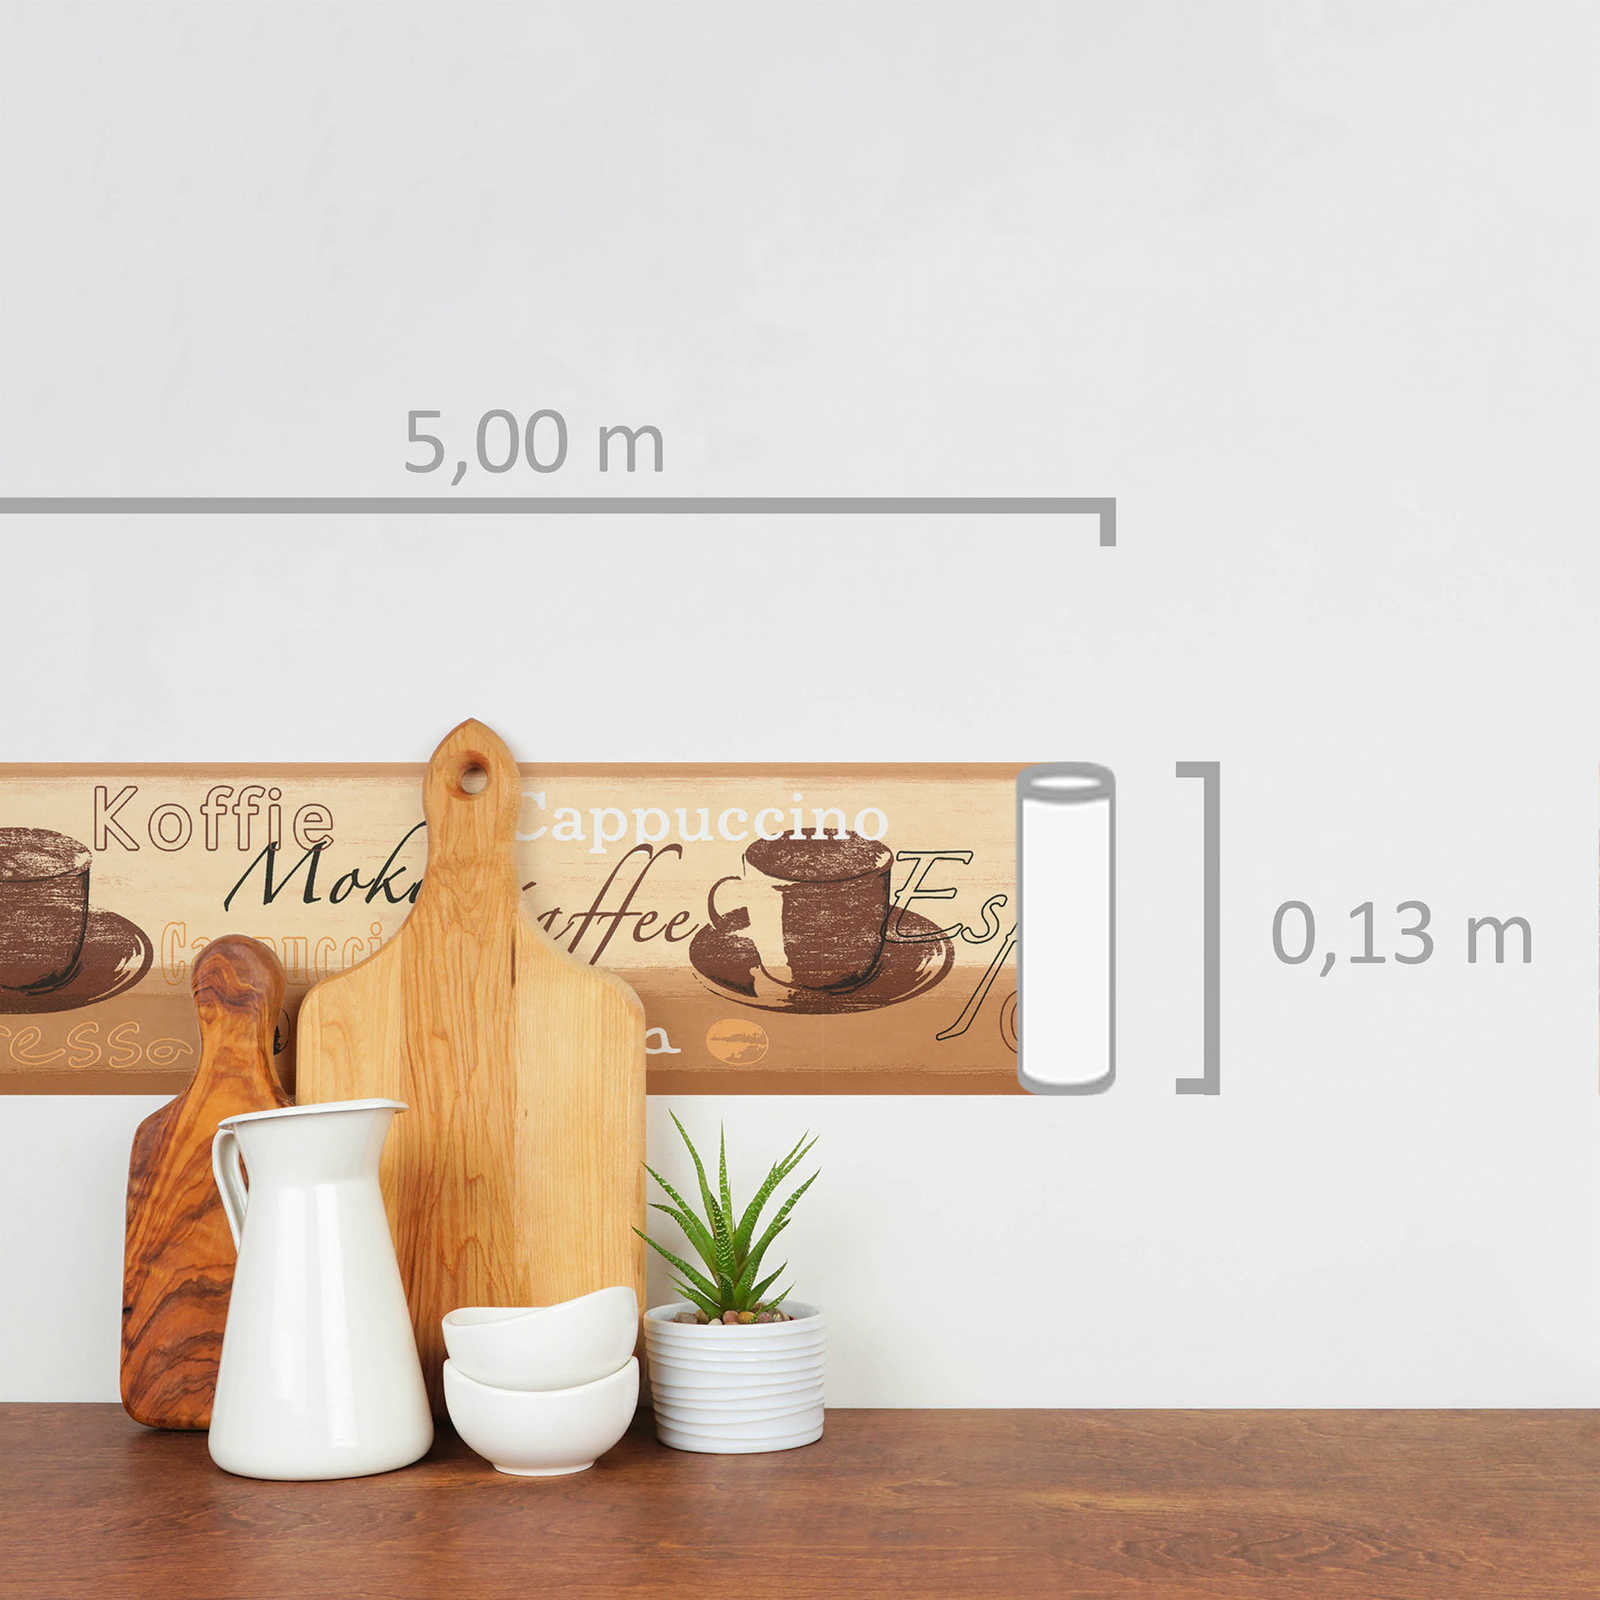             Tapeten Bordüre mit Kaffeemotiv für die Küche – Bunt
        